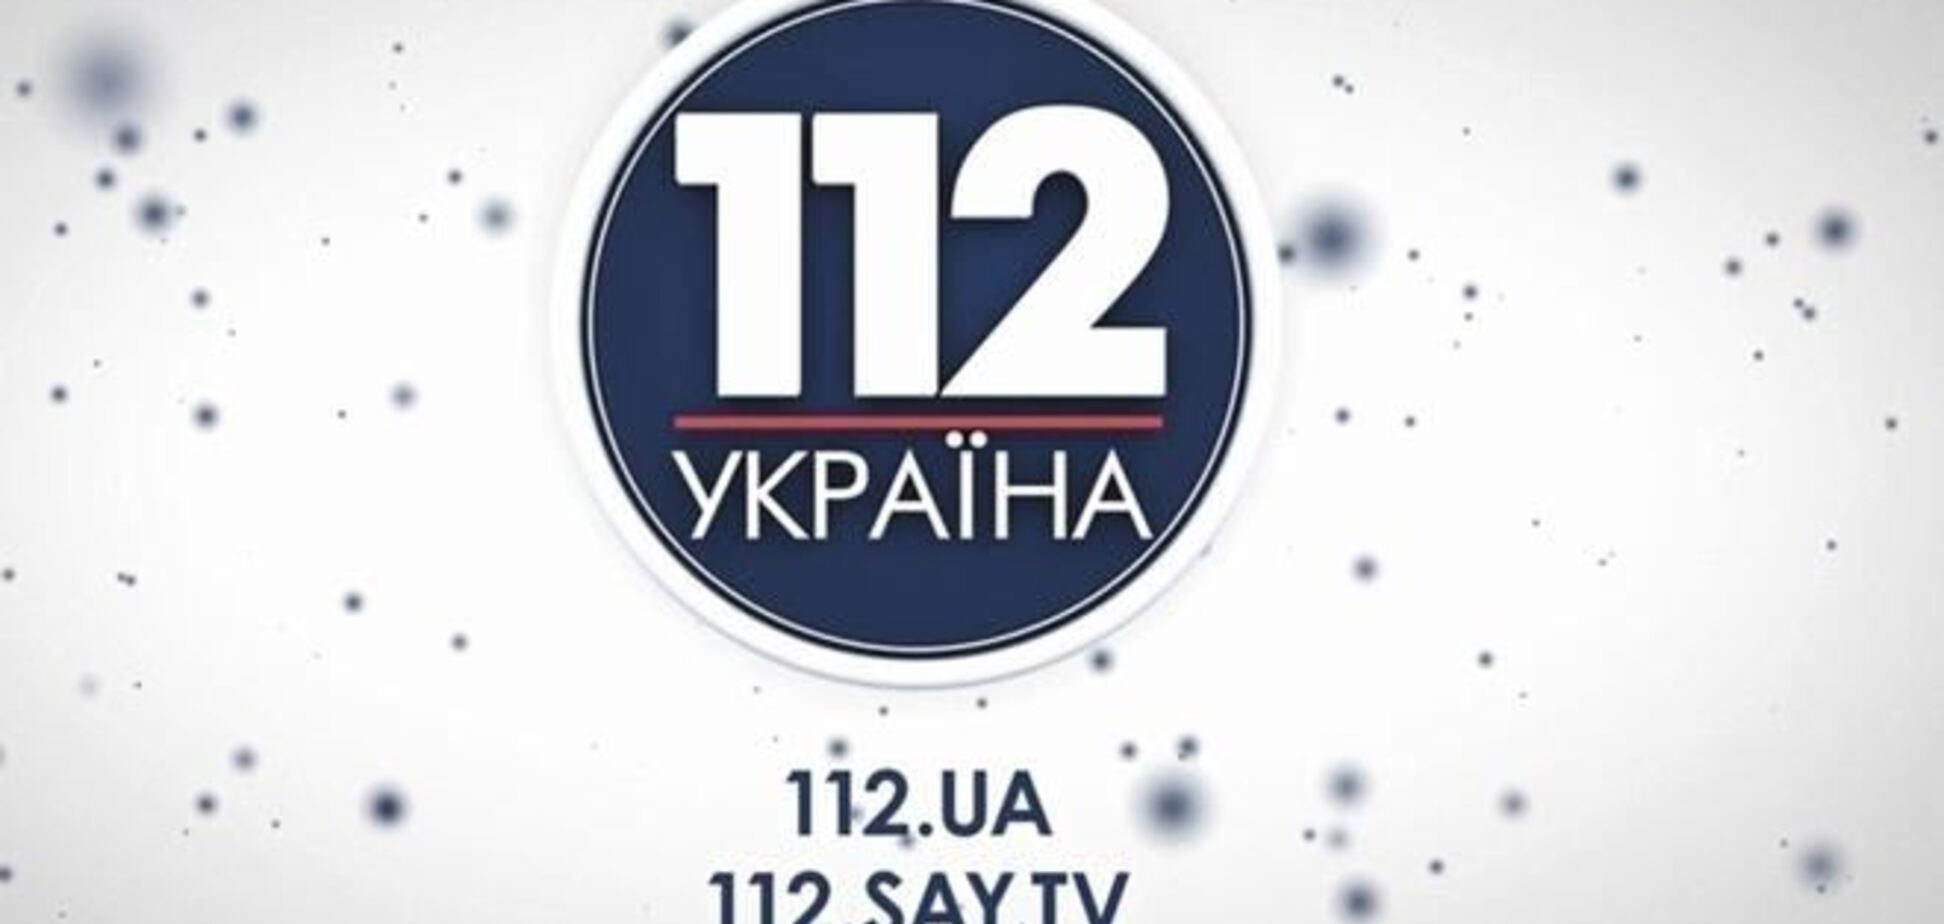 Телеканал '112 Украина' начал прямые эфиры